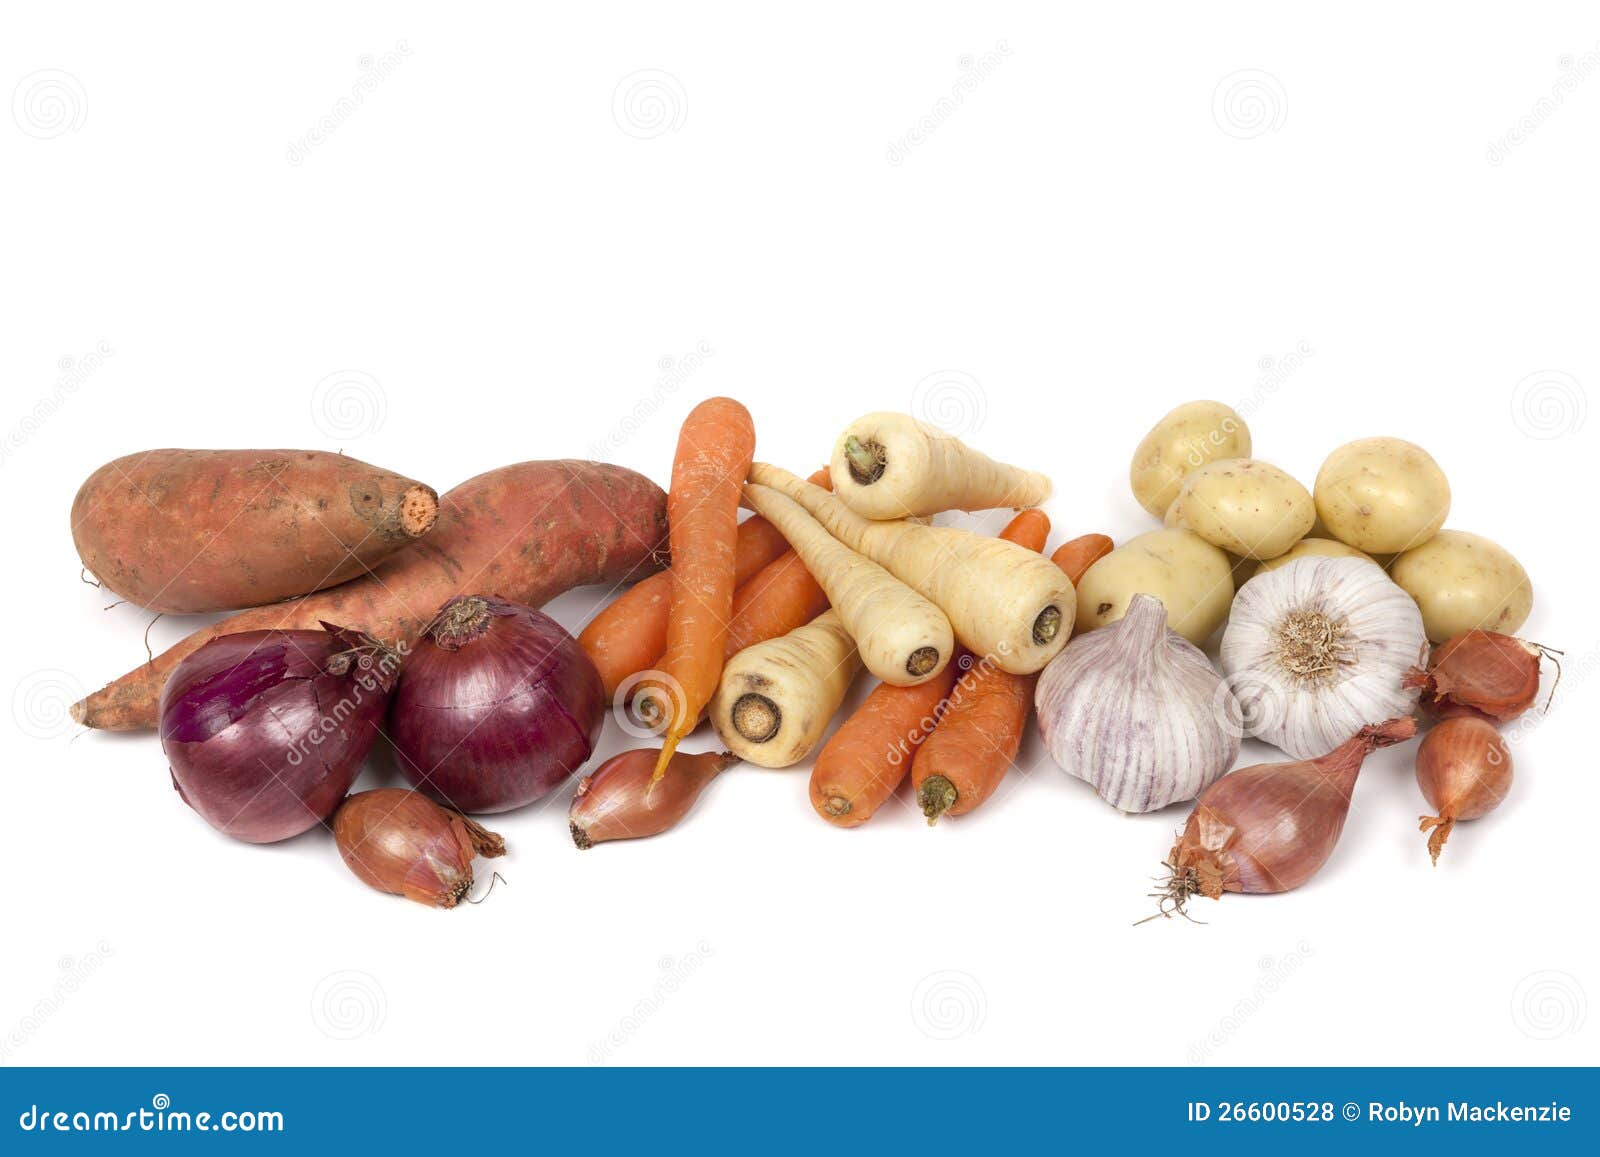 根菜类 库存图片. 图片 包括有 健康, 橙色, 颜色, 紫色, 木头, 红萝卜, 萝卜, 五颜六色, 素食者 - 24794791